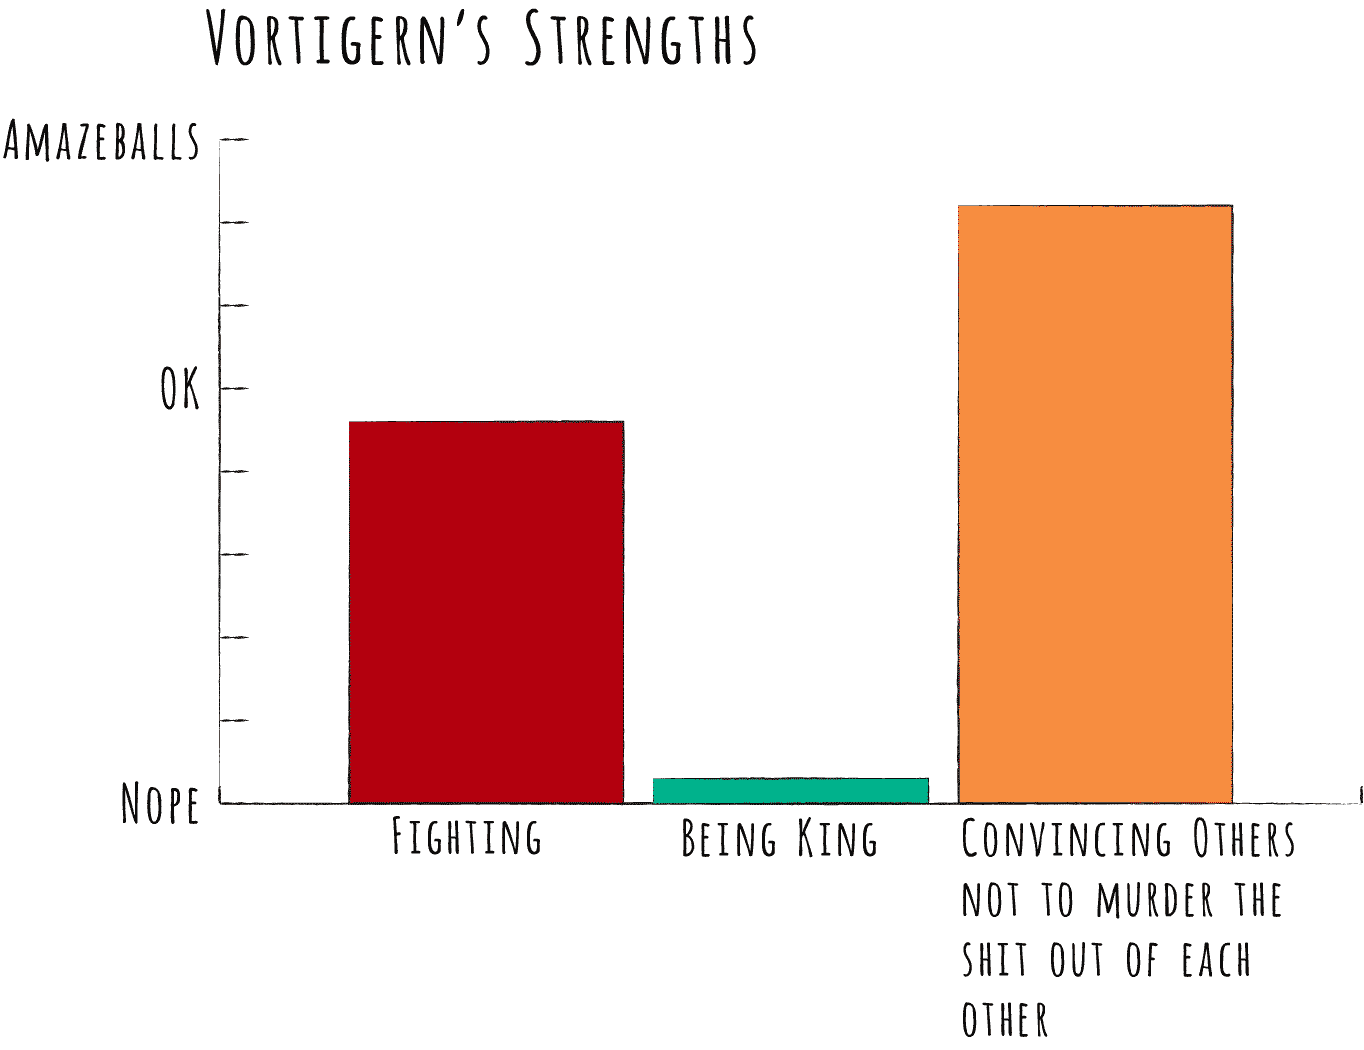 A chart of Vortigern's strengths